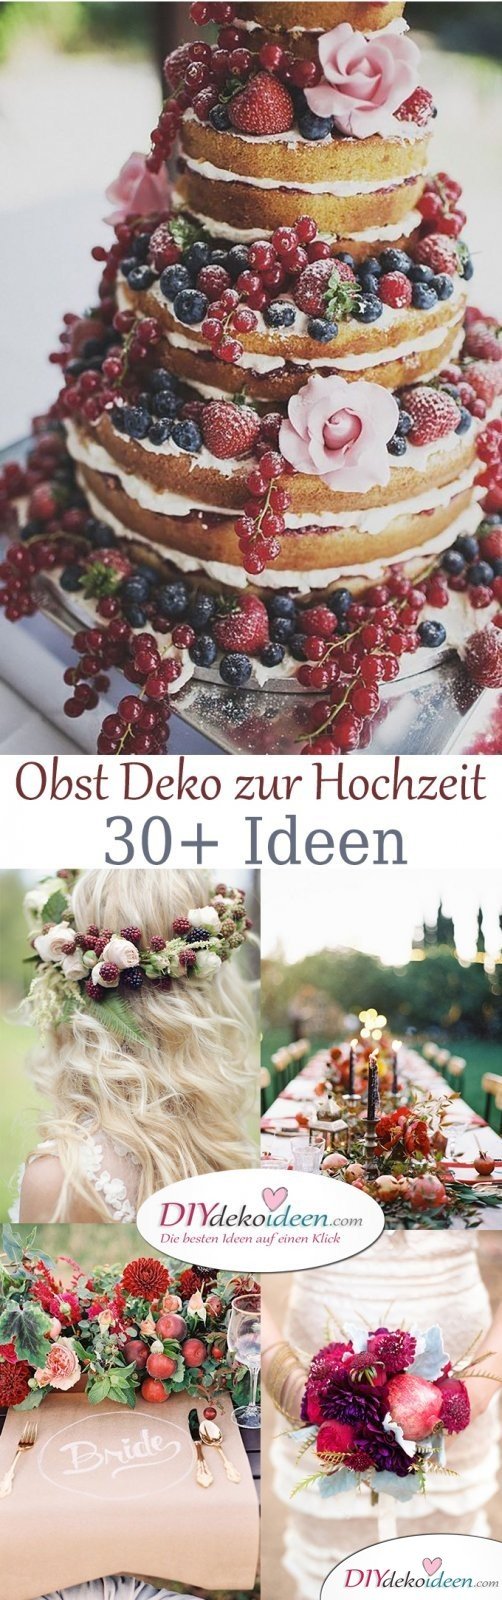 Obst Deko zur Hochzeit – DIY Ideen für Deko, Kuchen und Tischschmuck